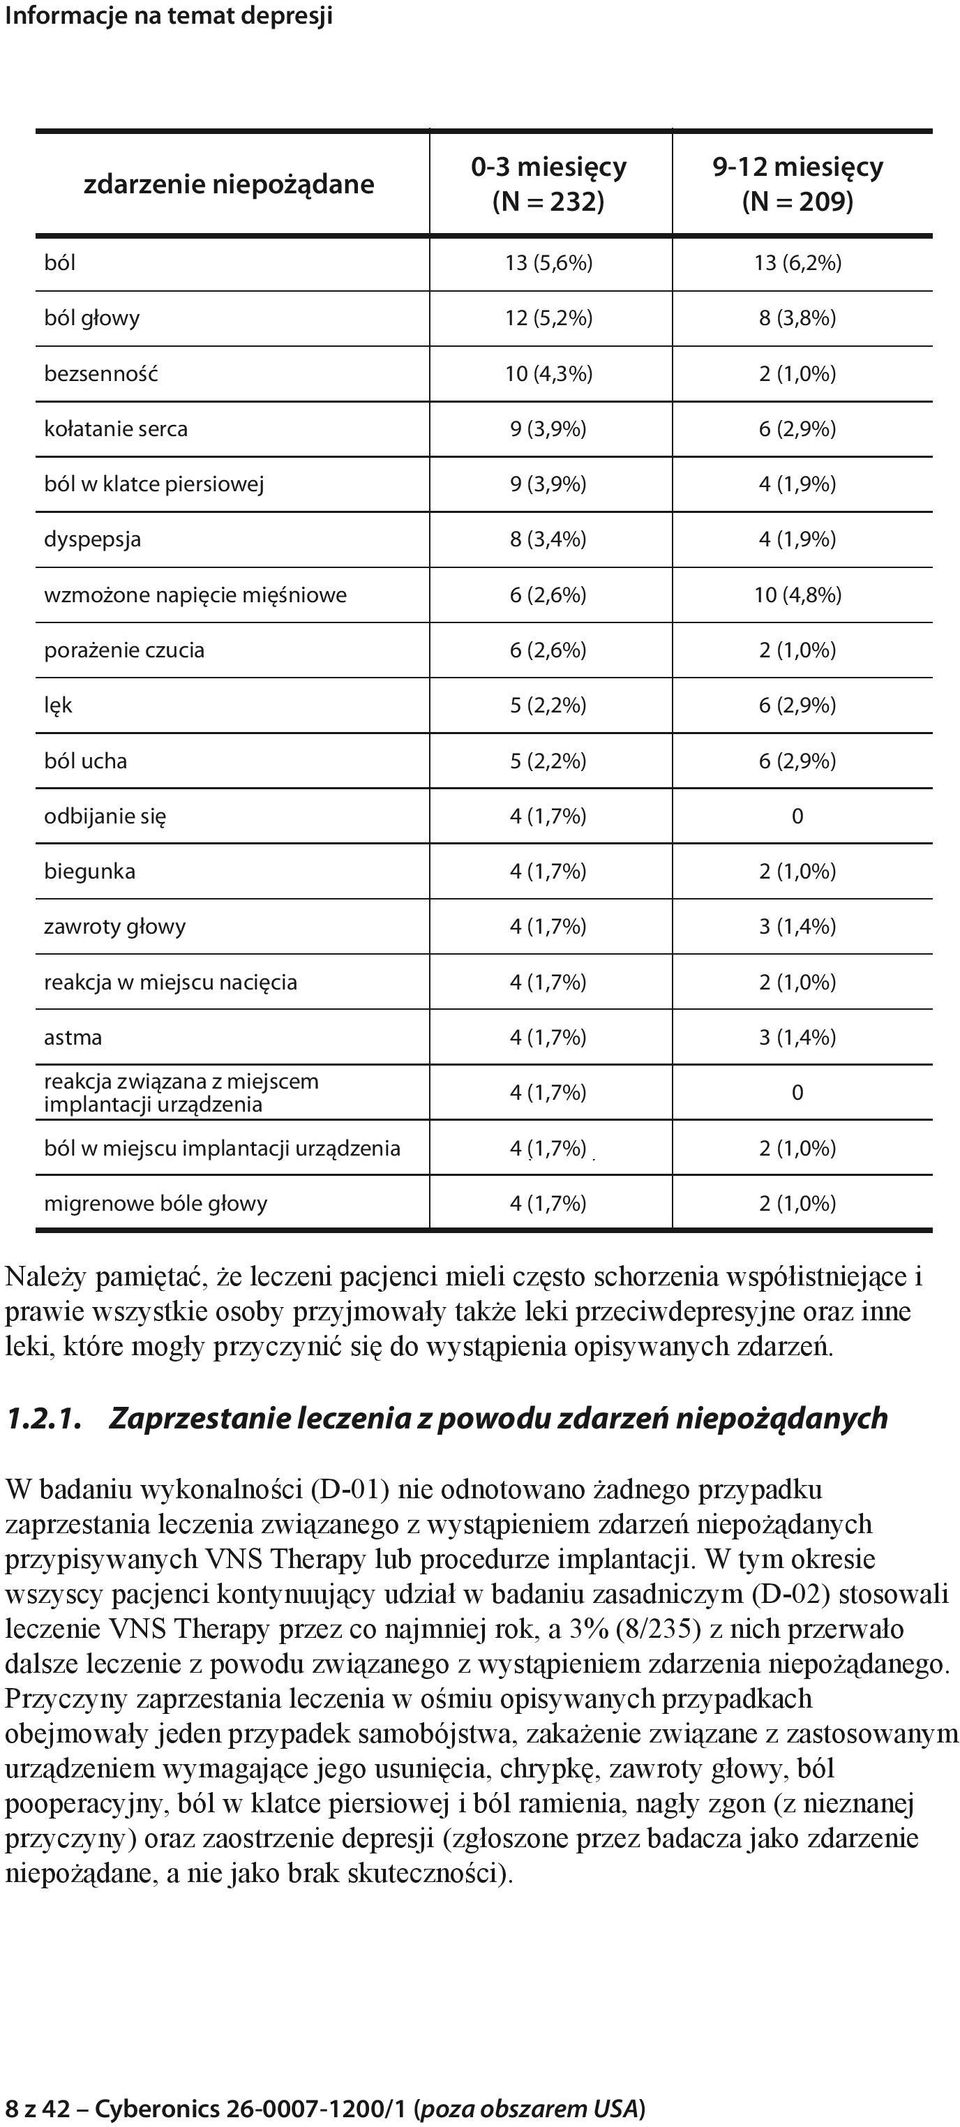 się 4 (1,7%) 0 biegunka 4 (1,7%) 2 (1,0%) zawroty głowy 4 (1,7%) 3 (1,4%) reakcja w miejscu nacięcia 4 (1,7%) 2 (1,0%) astma 4 (1,7%) 3 (1,4%) reakcja związana z miejscem implantacji urządzenia 4